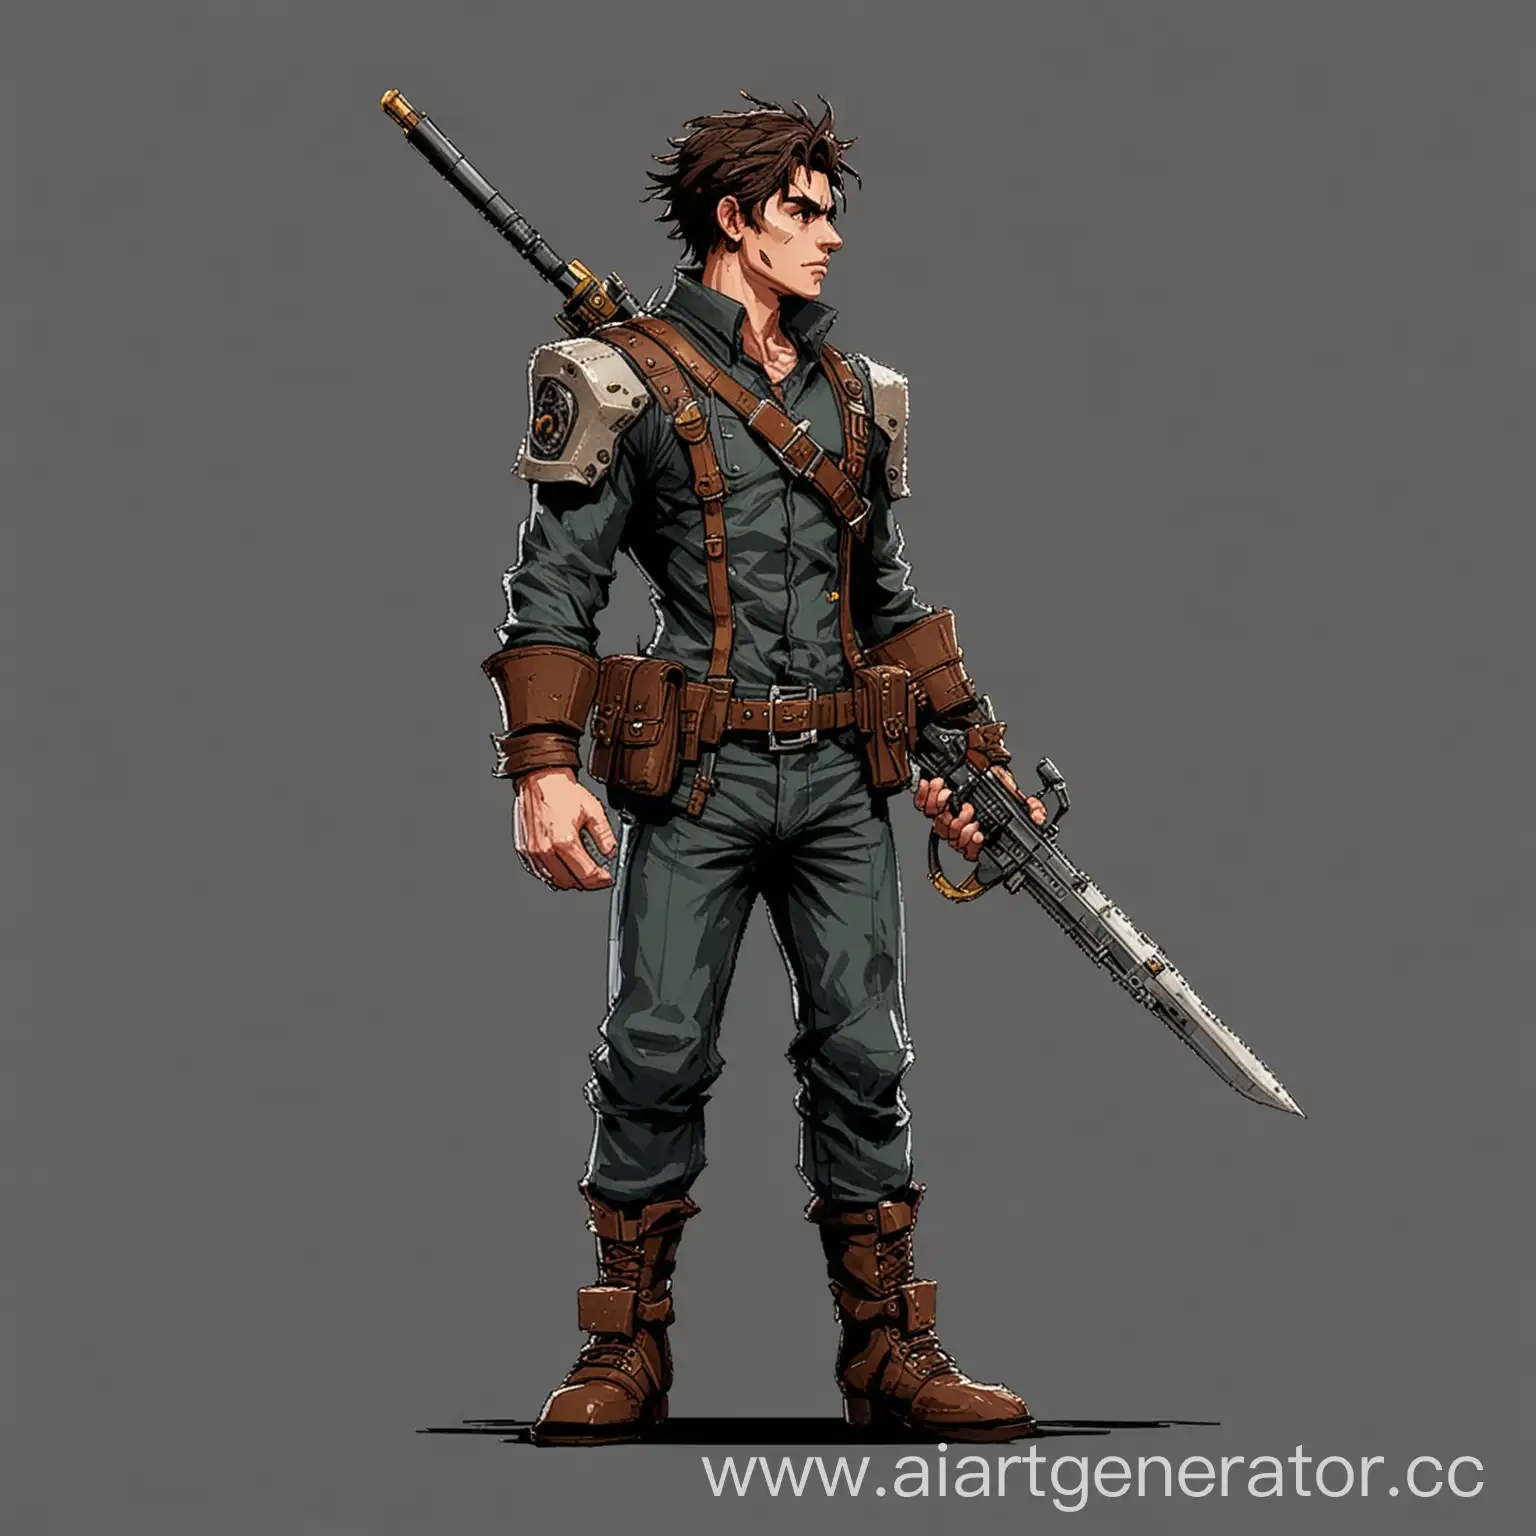 2д, персонаж мужского рода, пиксельный, с оружием, стоит боком
